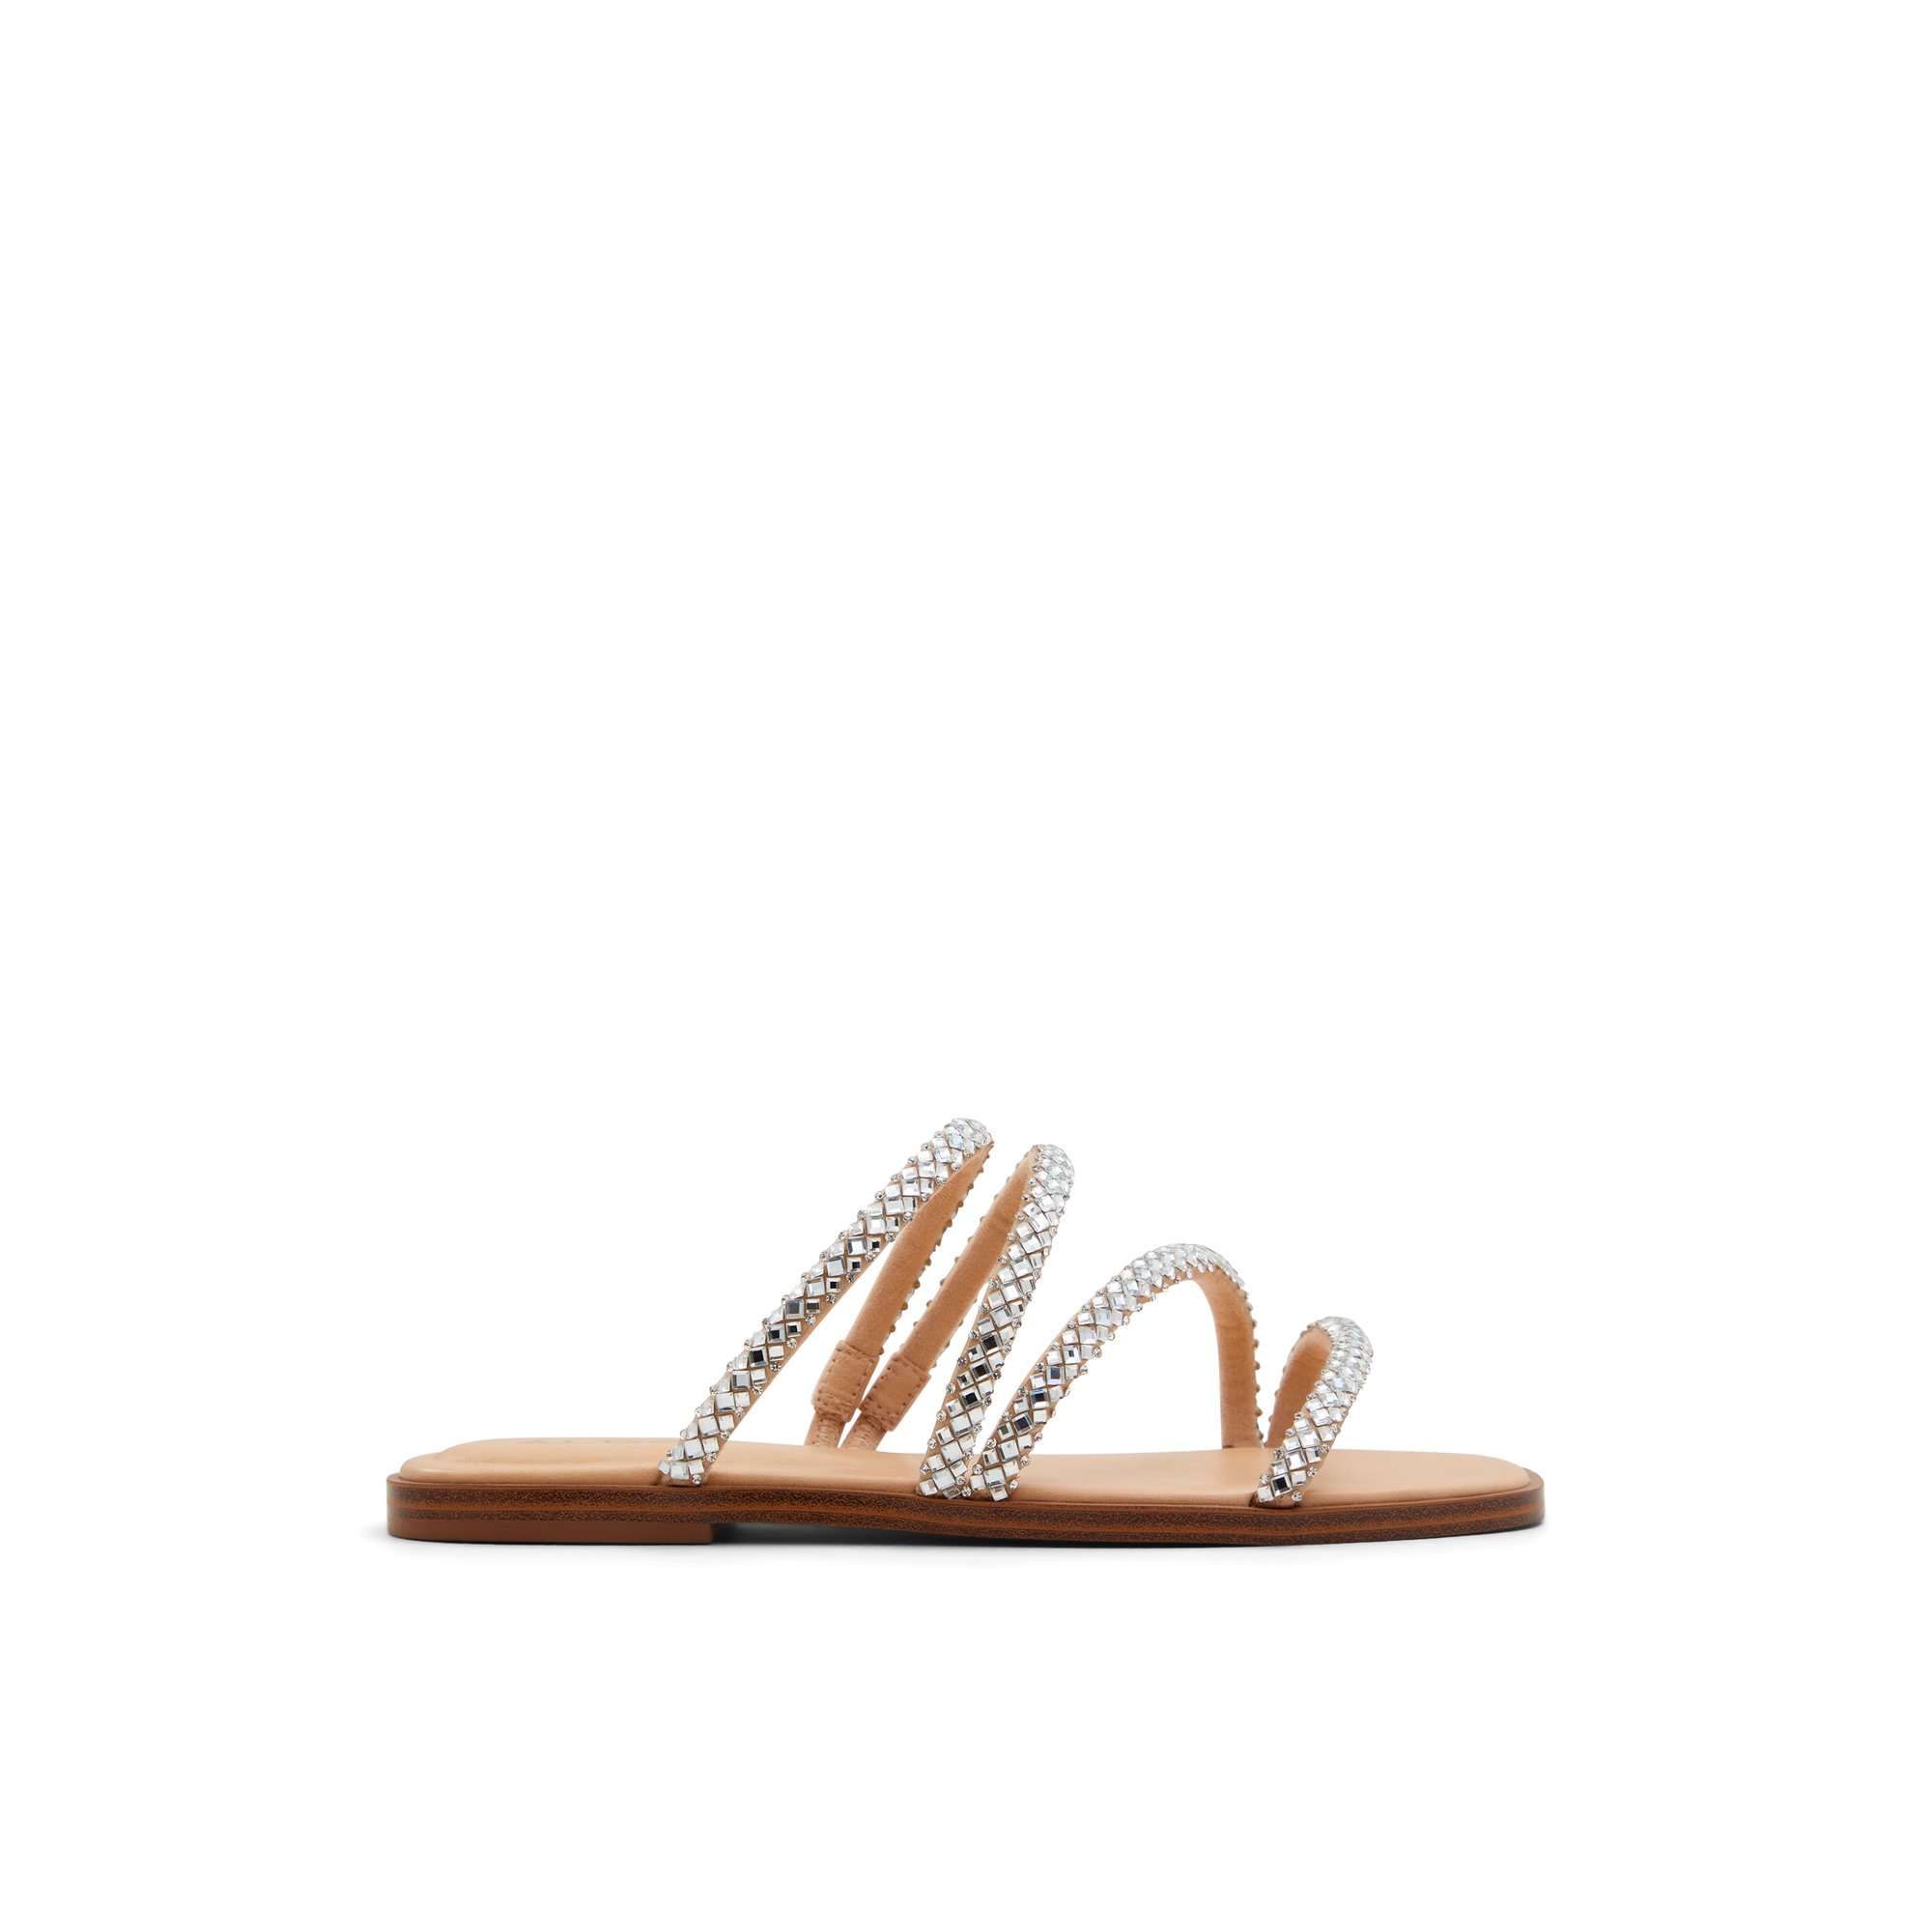 ALDO Triton - Women's Sandals Flats - Silver